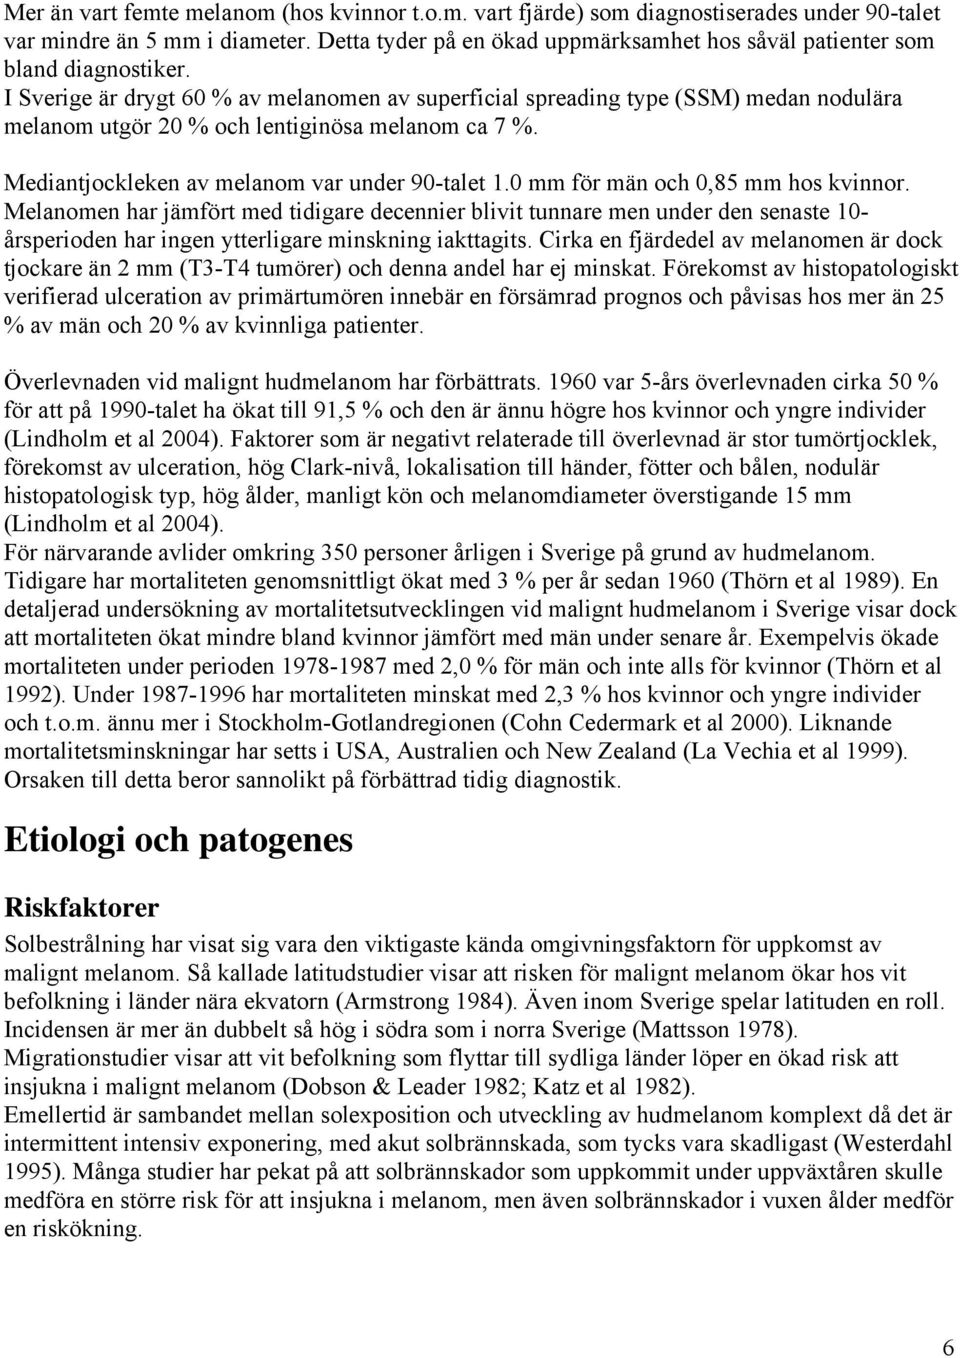 I Sverige är drygt 60 % av melanomen av superficial spreading type (SSM) medan nodulära melanom utgör 20 % och lentiginösa melanom ca 7 %. Mediantjockleken av melanom var under 90-talet 1.